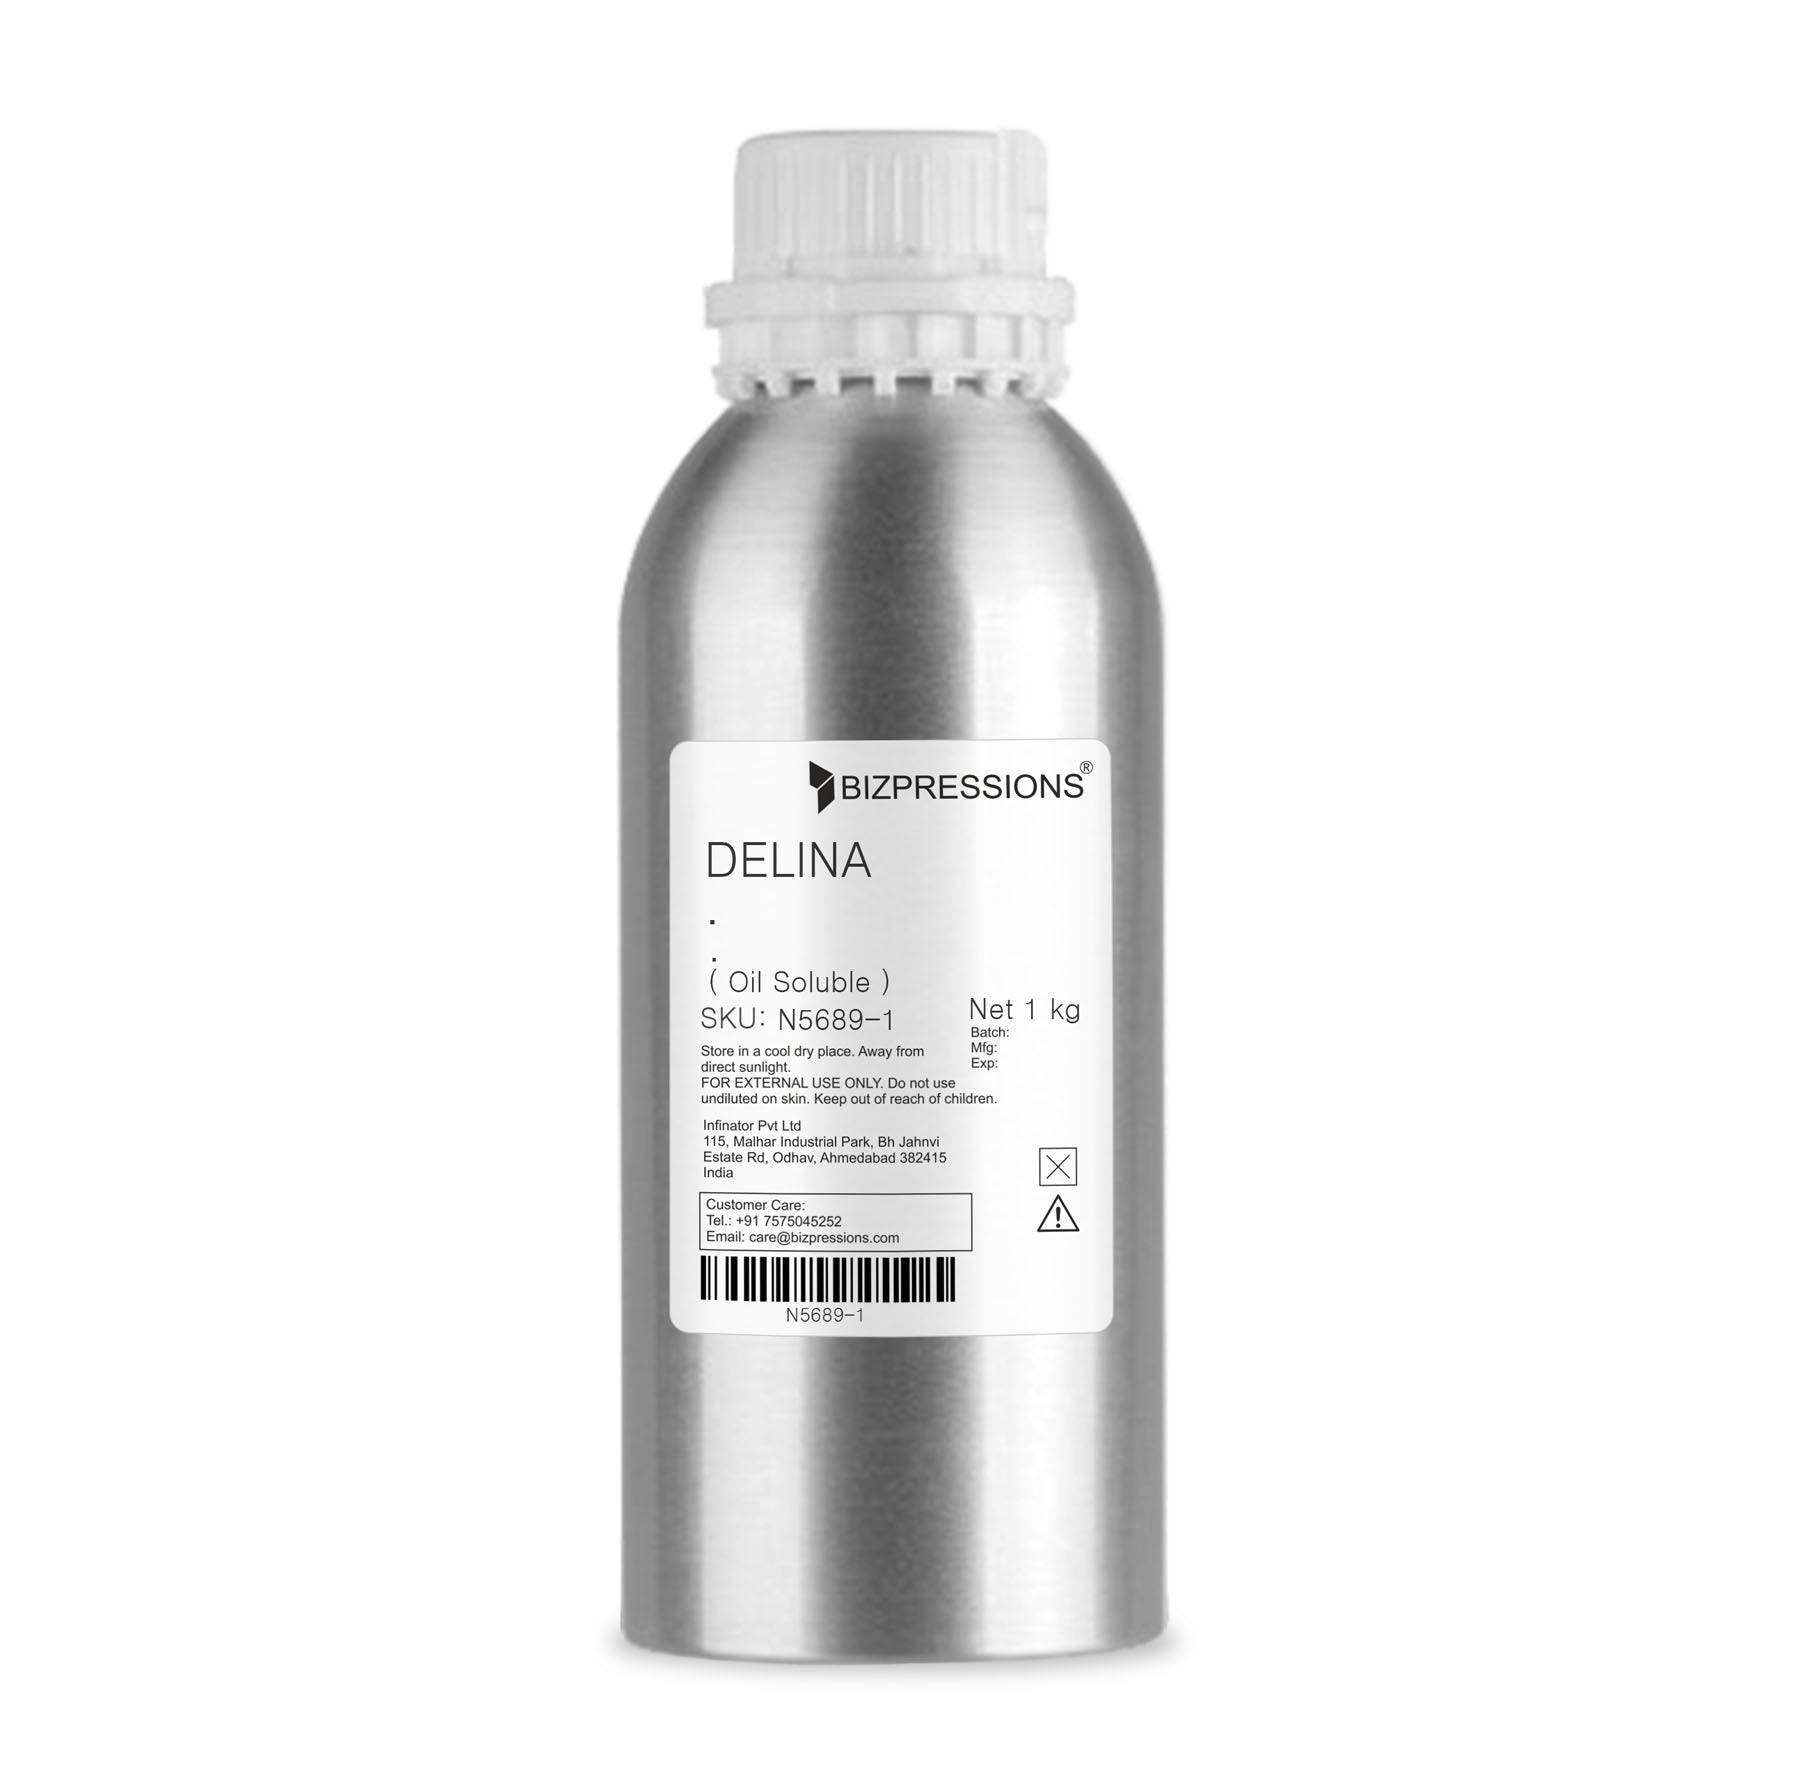 DELINA - Fragrance ( Oil Soluble ) - 1 kg